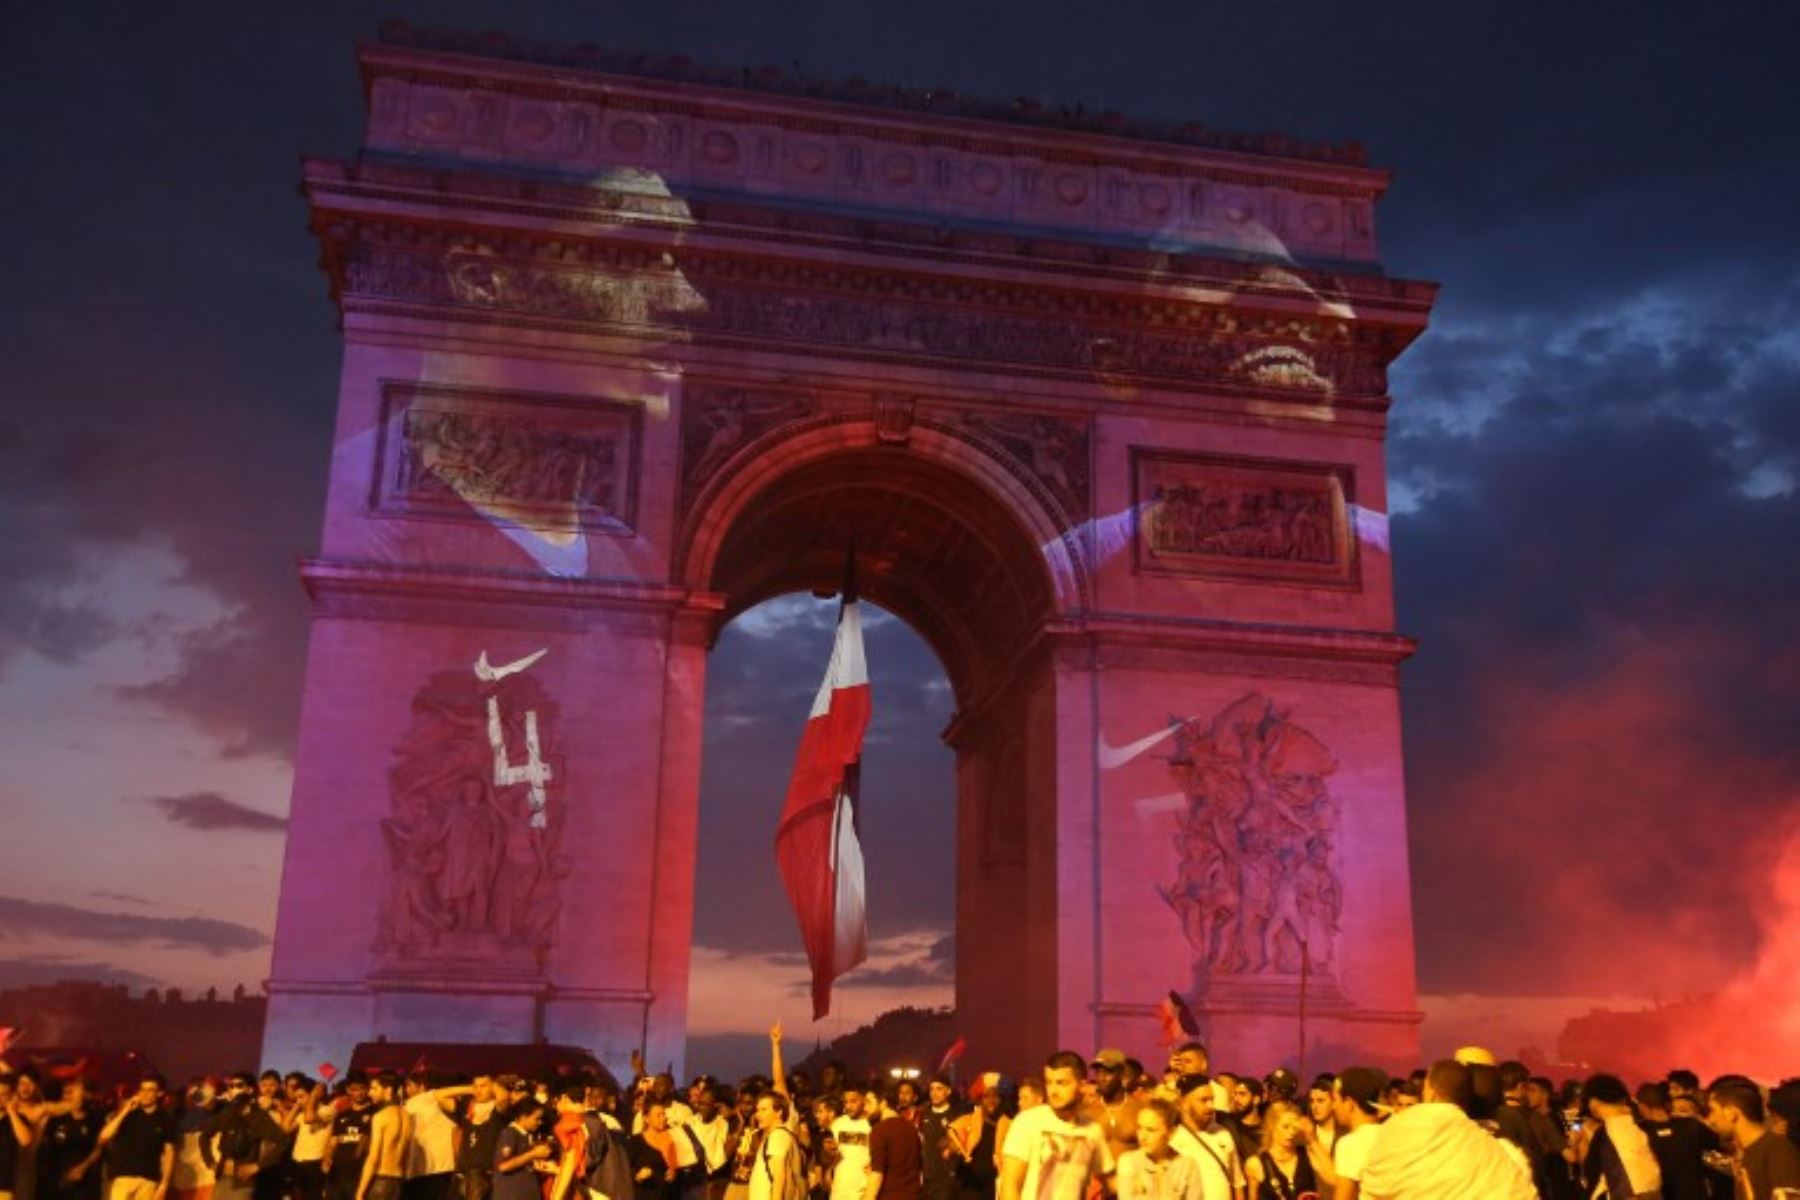 La gente celebra después del partido de fútbol final de la Copa Mundial Rusia 2018 entre Francia y Croacia, cerca del Arco del Triunfo en la avenida de los Campos Elíseos en París.Foto:AFP